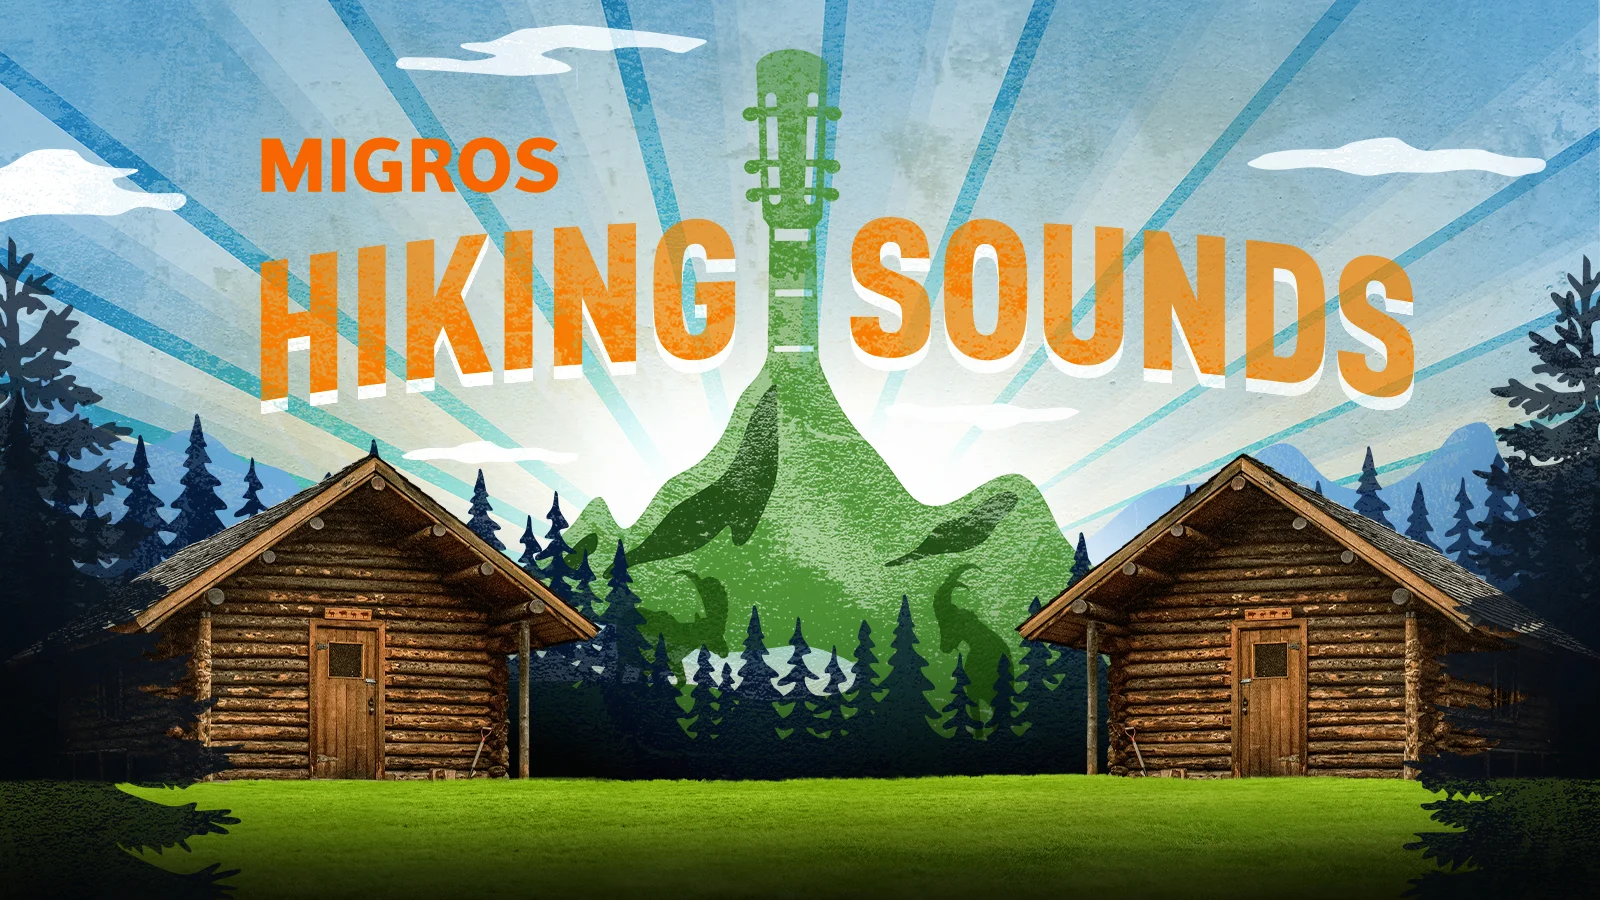 Gewinne 1x2 Tickets für das Migros Hiking Sounds